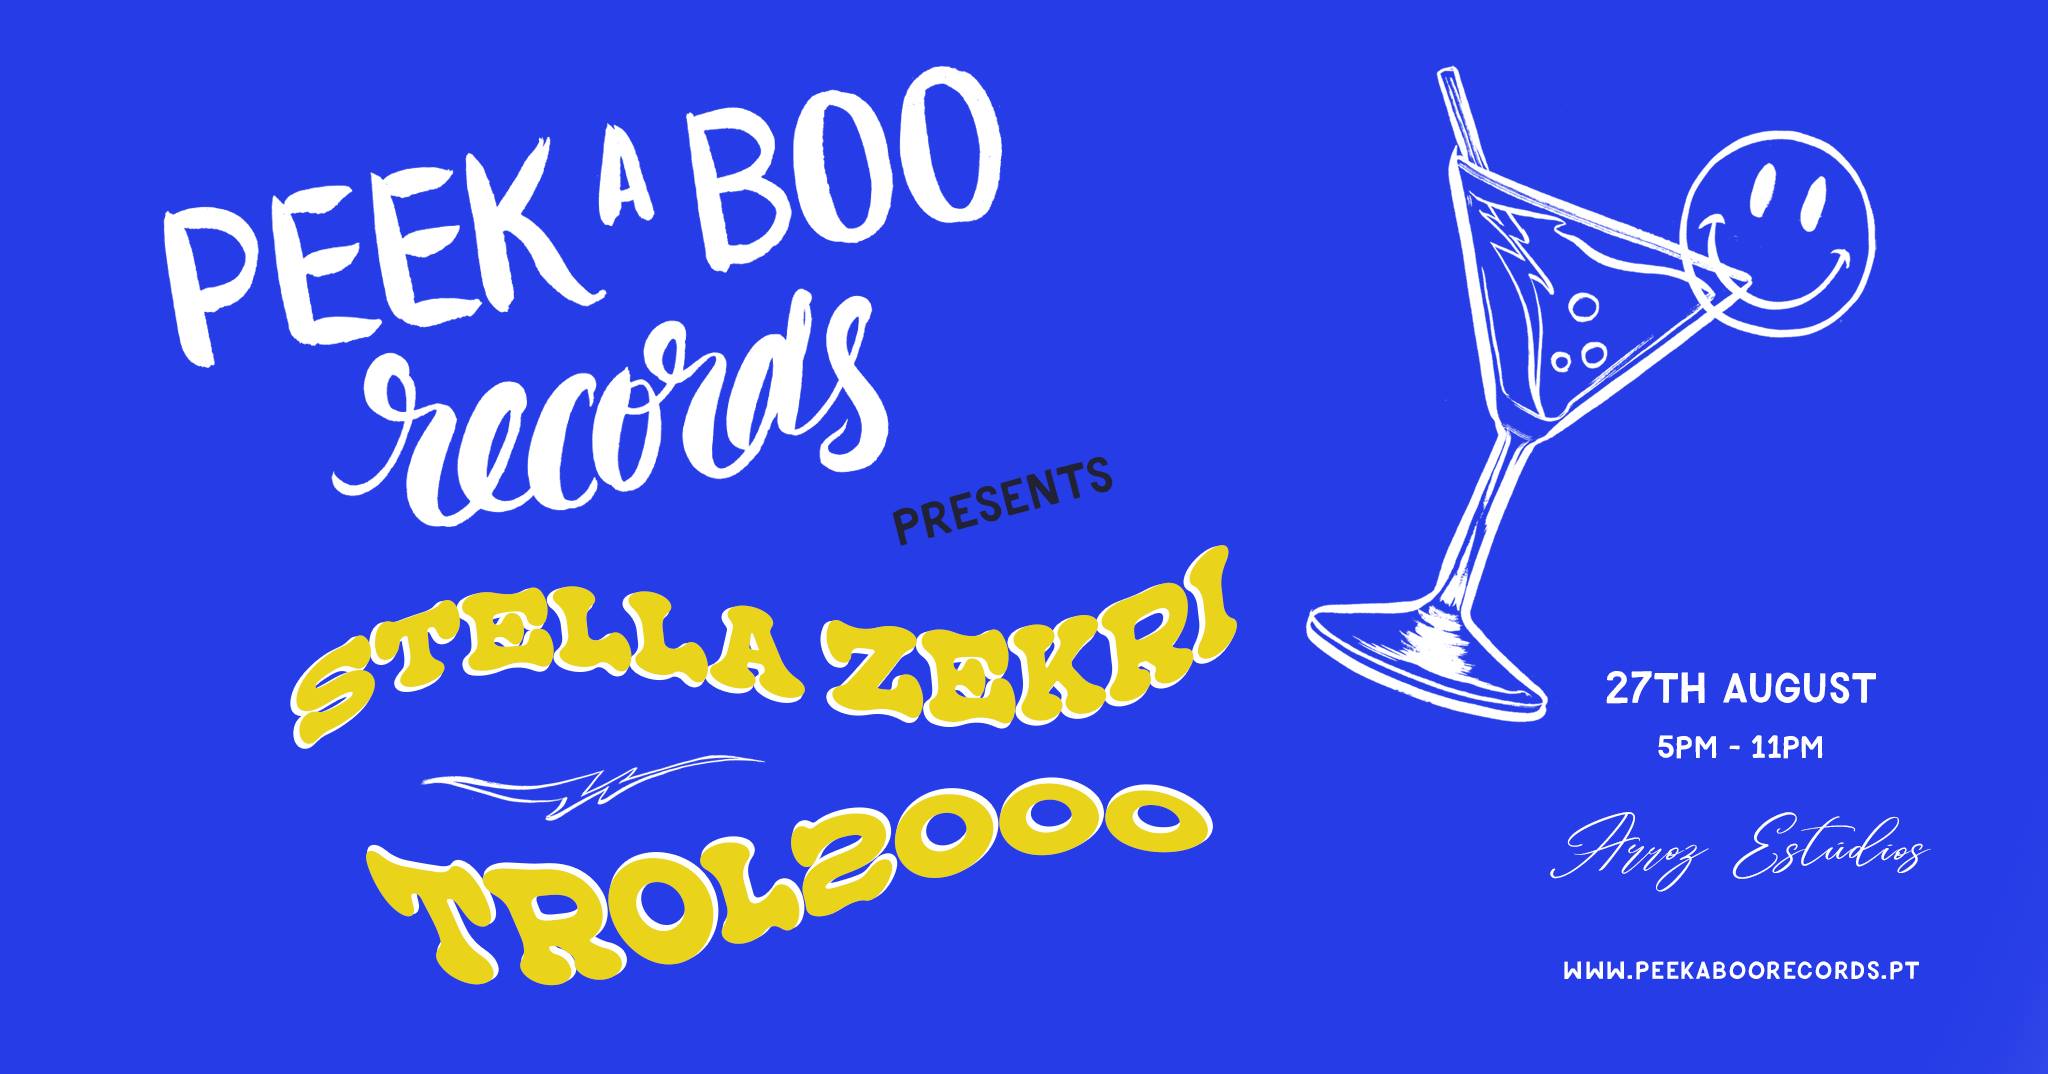 Peekaboo Records presents: Stella Zekri + Trol2000